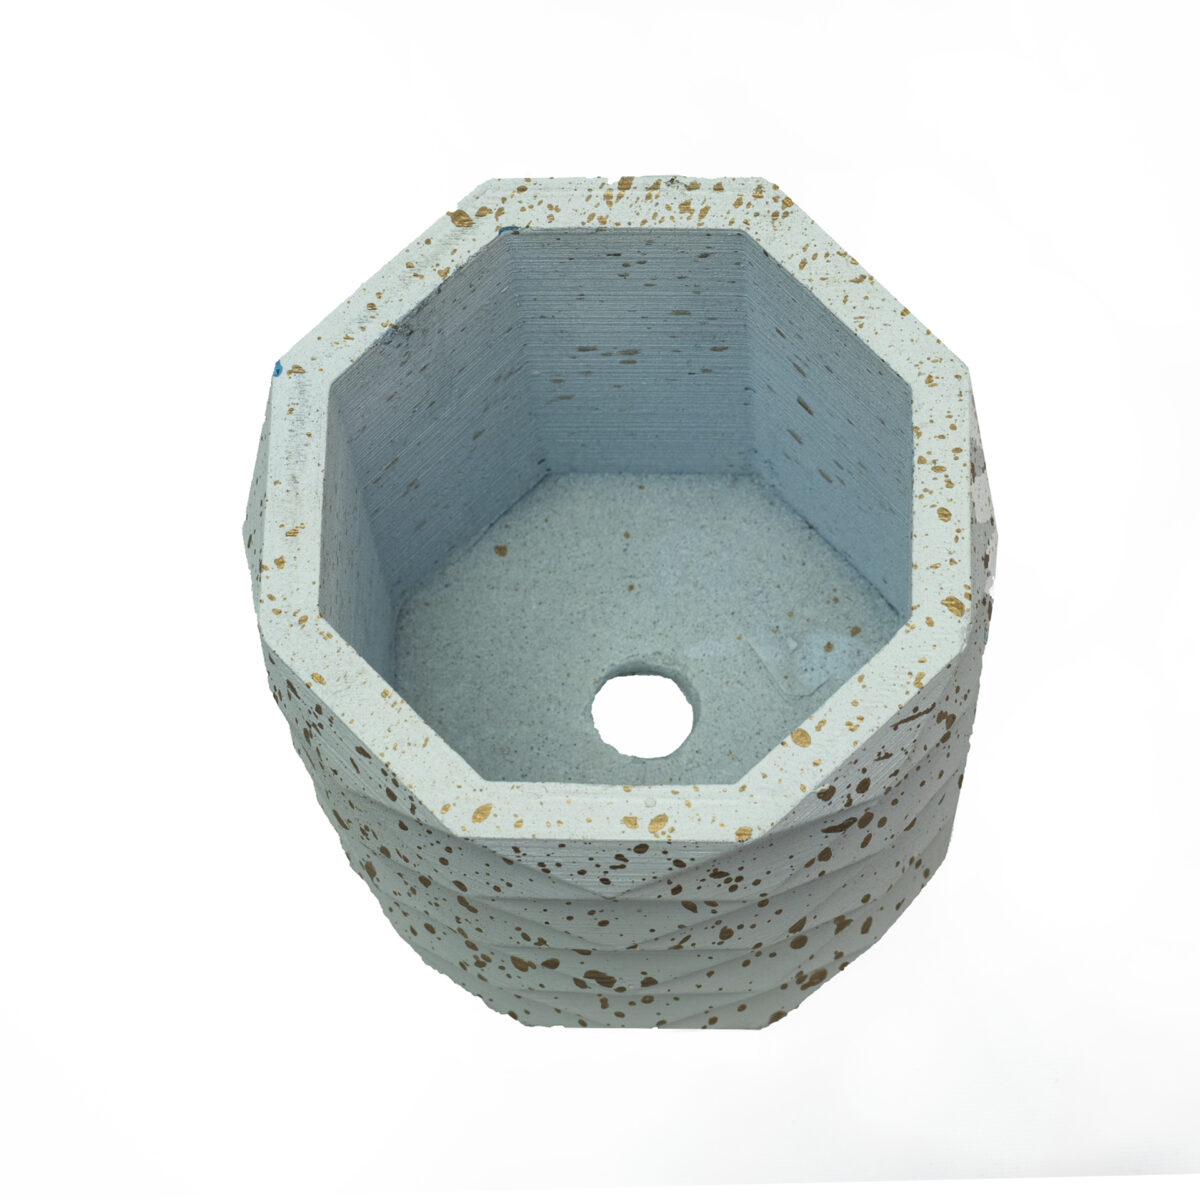 concrete pots online india